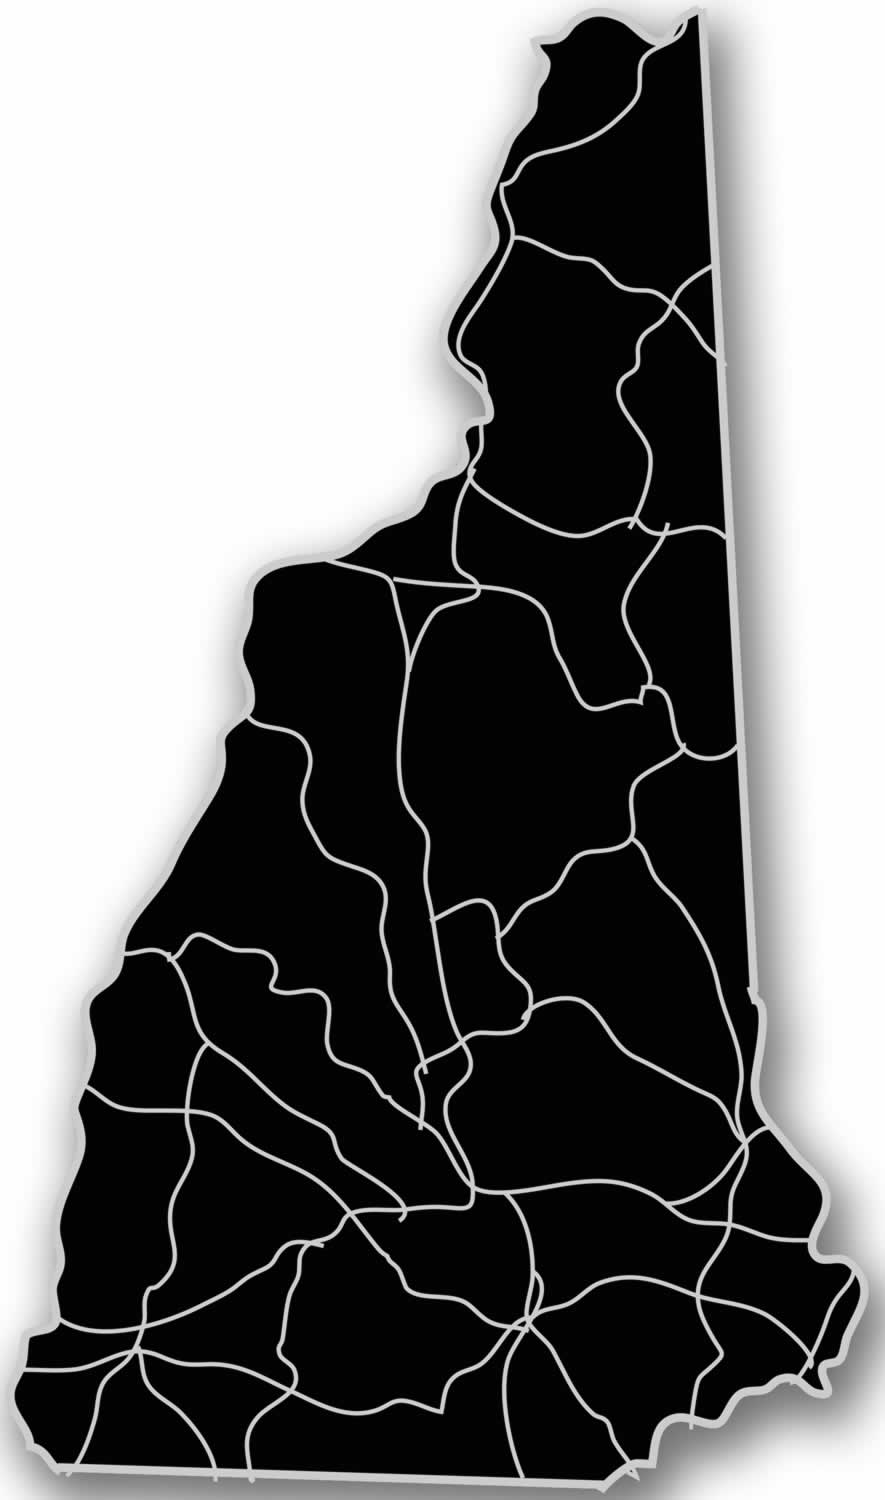 New Hampshire - Acrylic Cutout State Map - Black/Grey USA States Acrylic Art